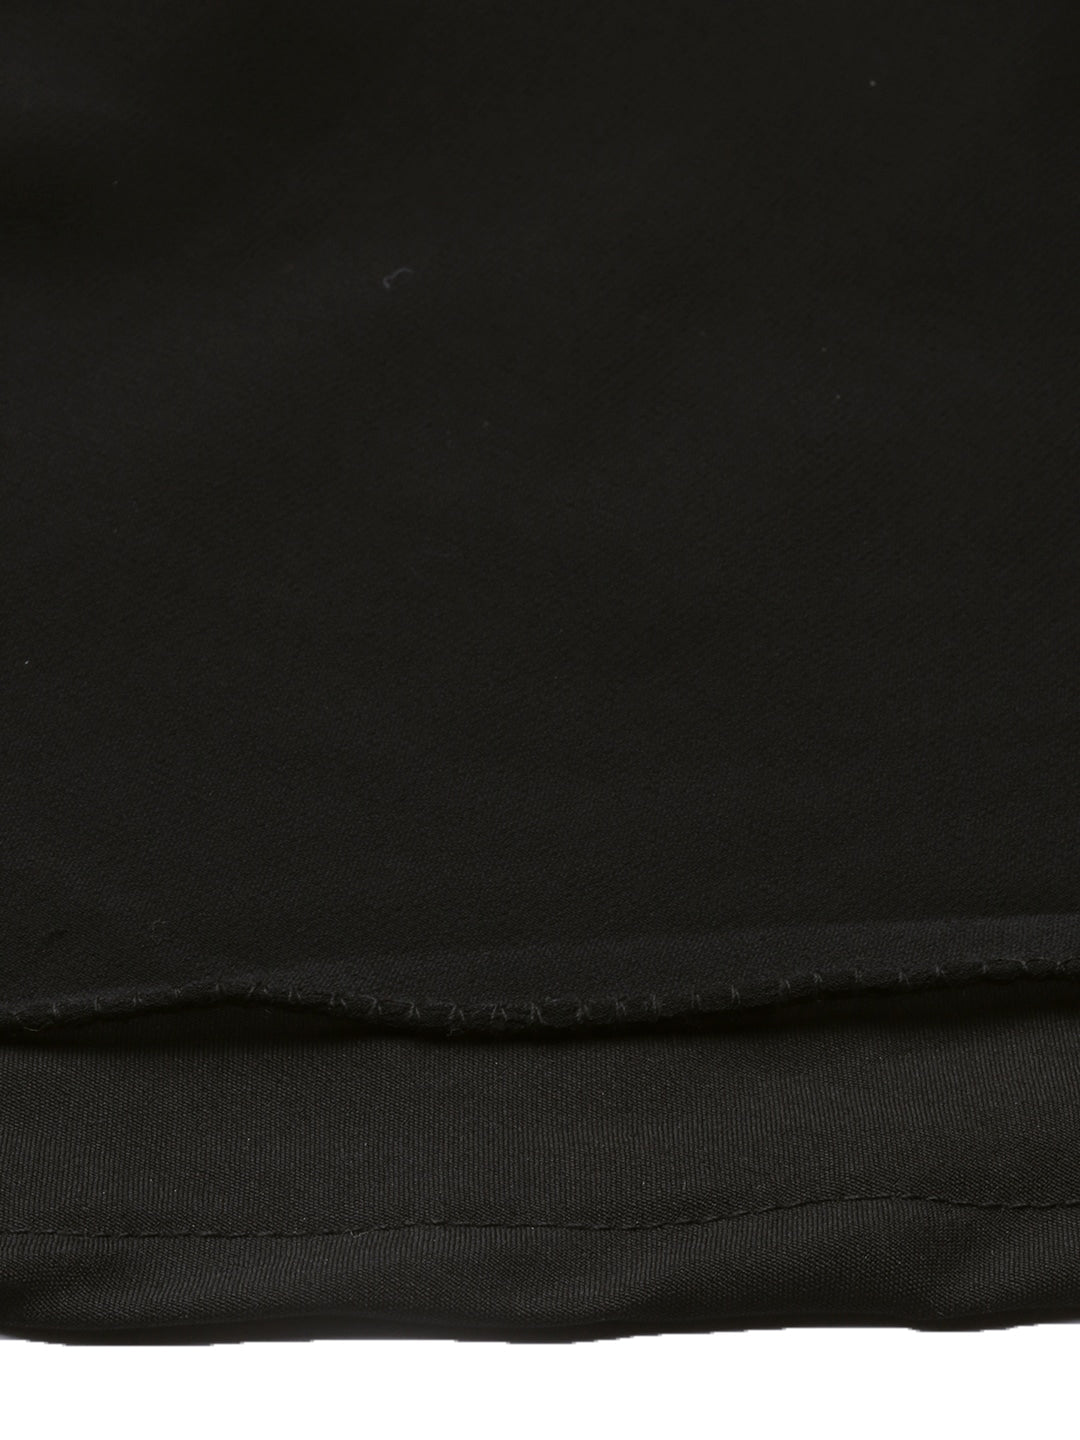 Multicolored-Organza-Jacket-&-Black-Dress